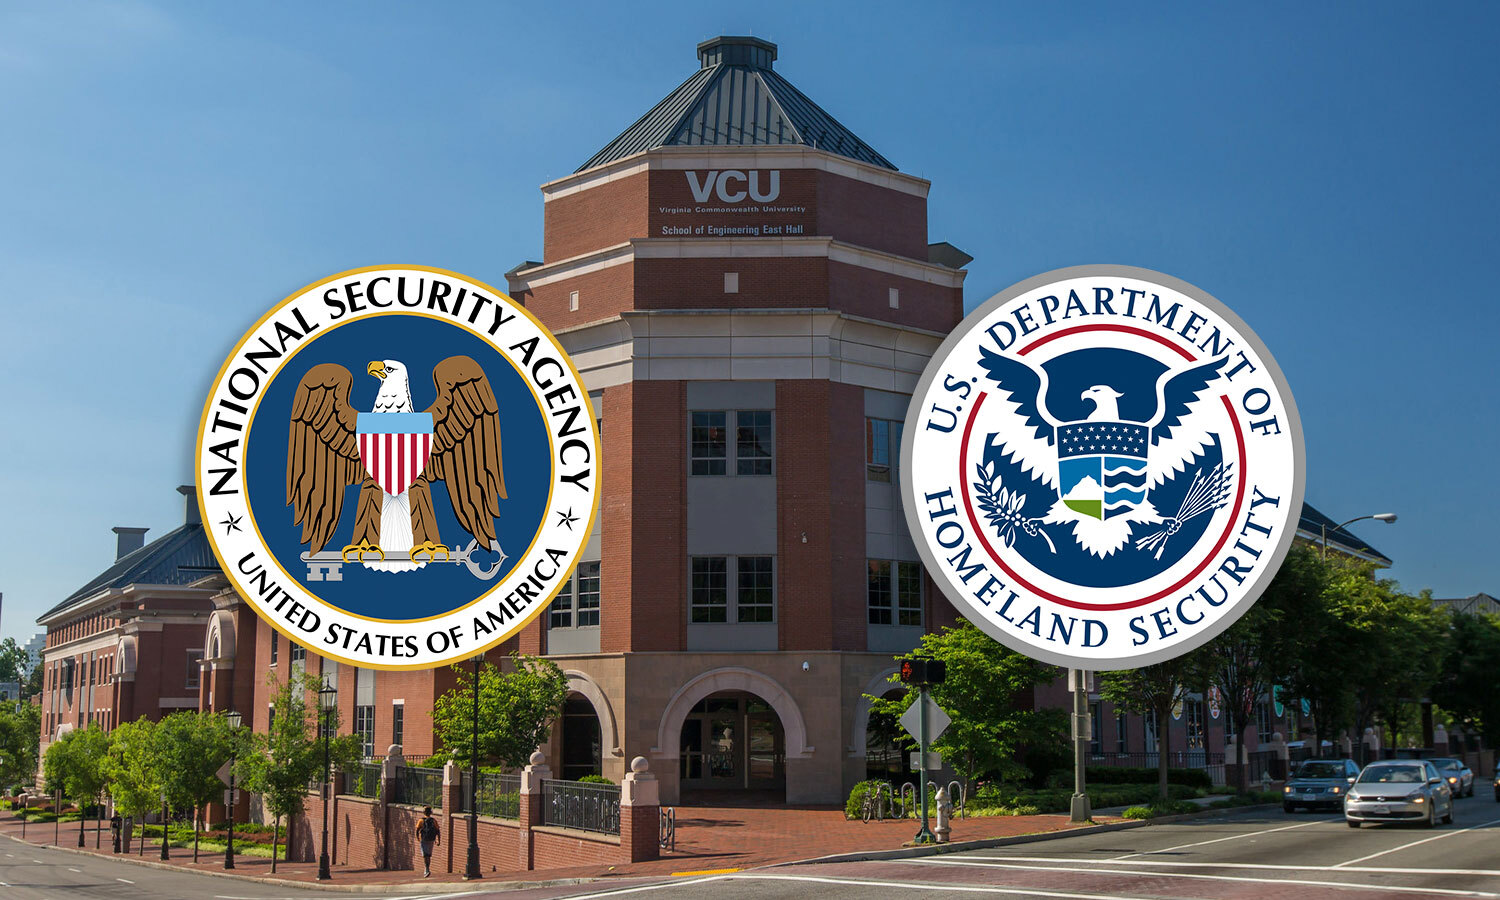 East Hall and NSA DHS logos